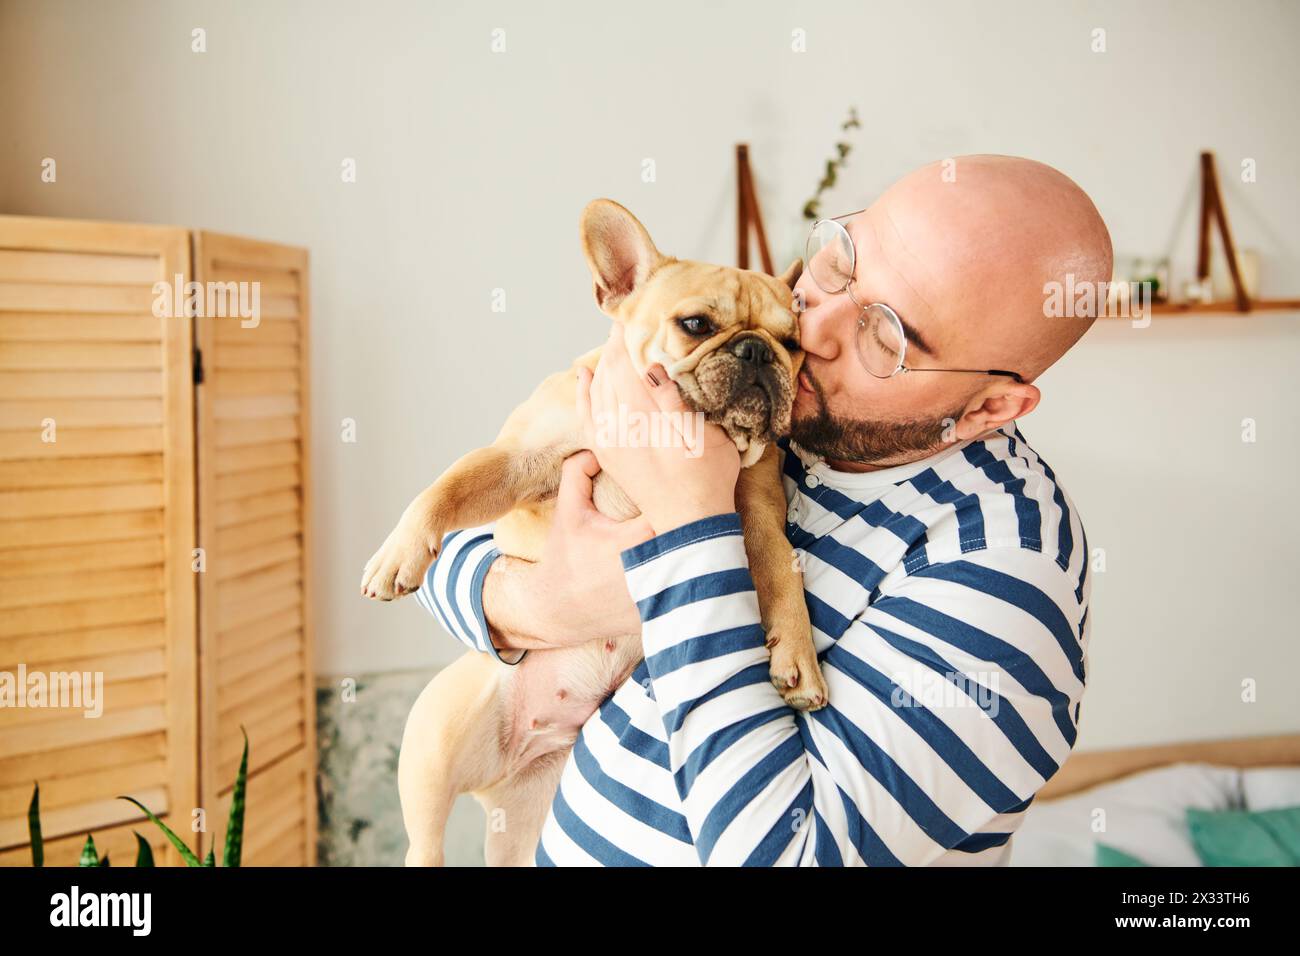 Hübscher Mann mit Brille, der eine kleine französische Bulldogge in den Armen hält. Stockfoto